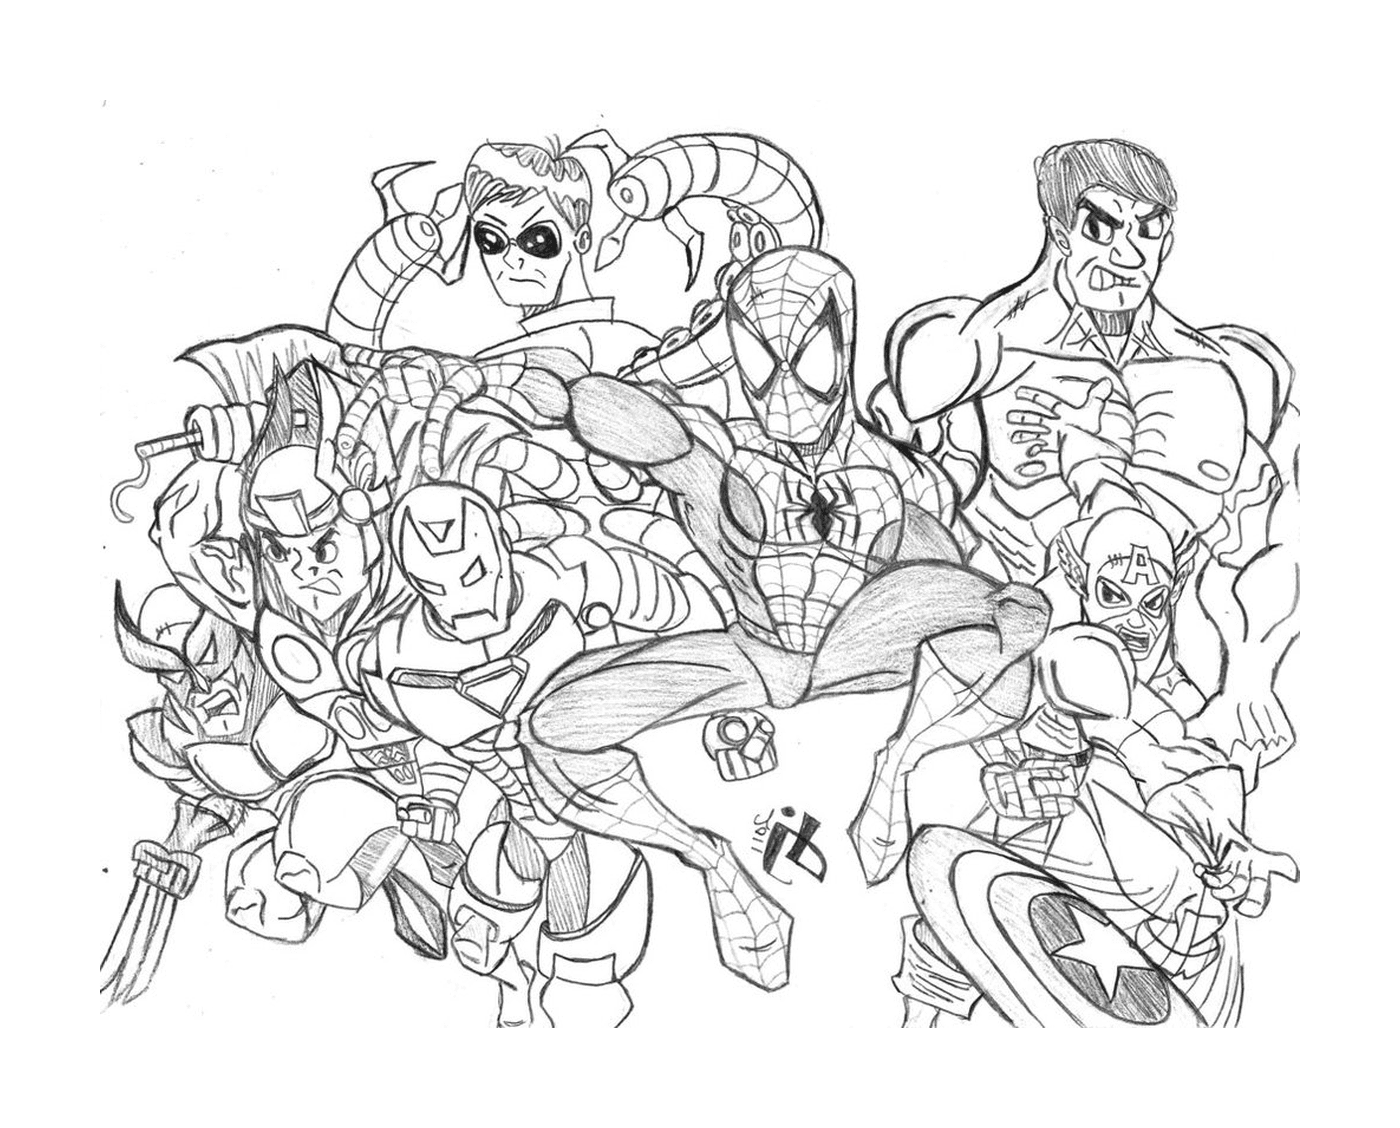  Eine Gruppe von Superhelden gezeichnet 